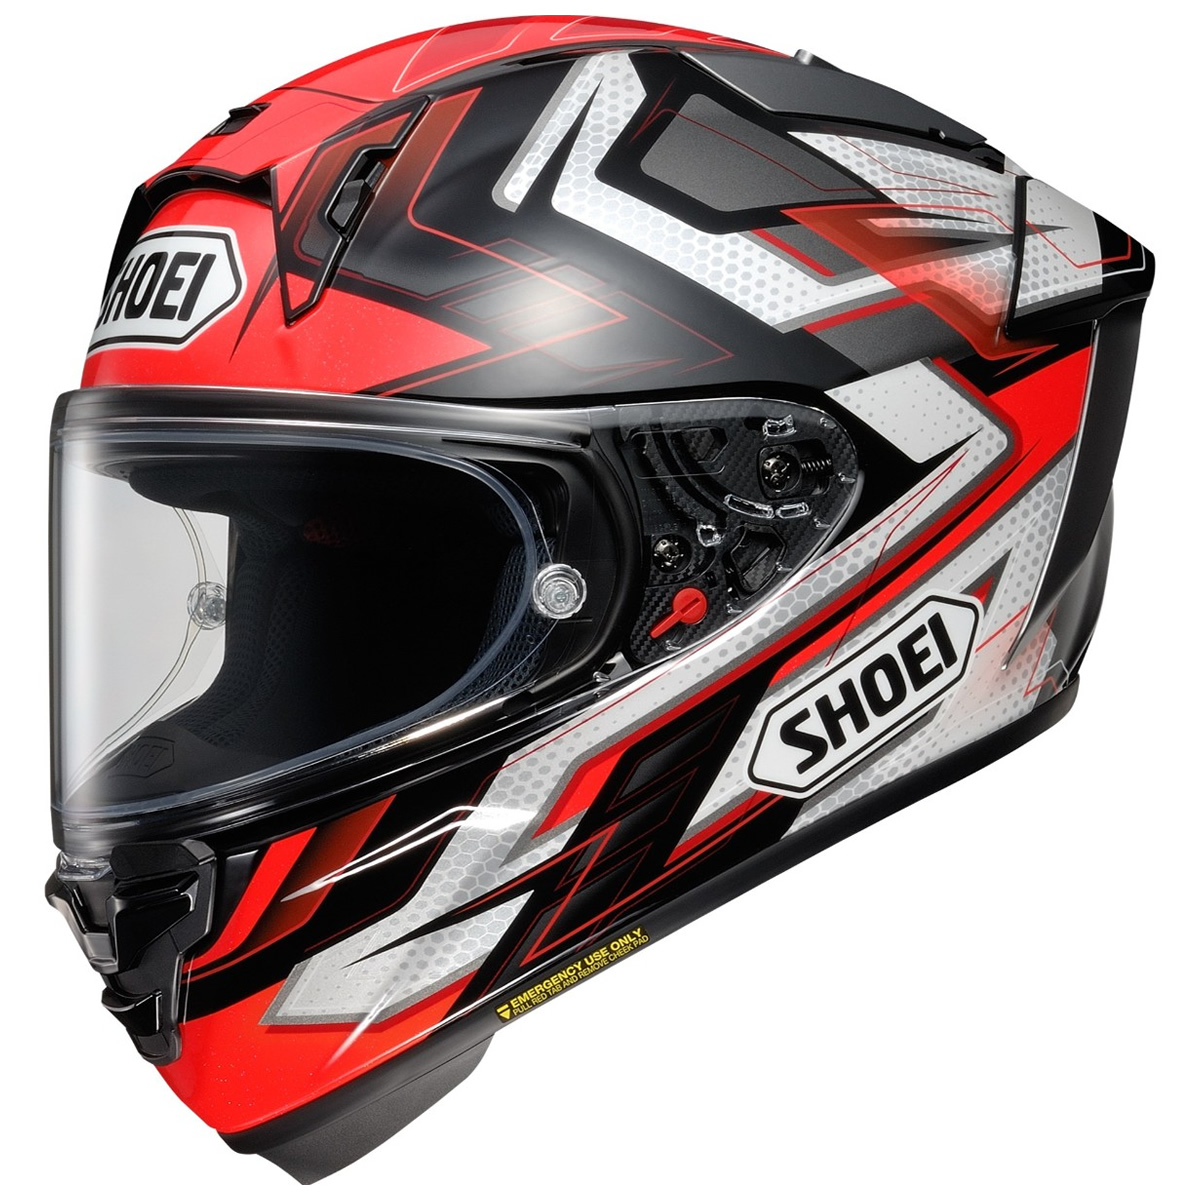 Shoei Helm X-SPR PRO Escalate, schwarz-weiß-rot